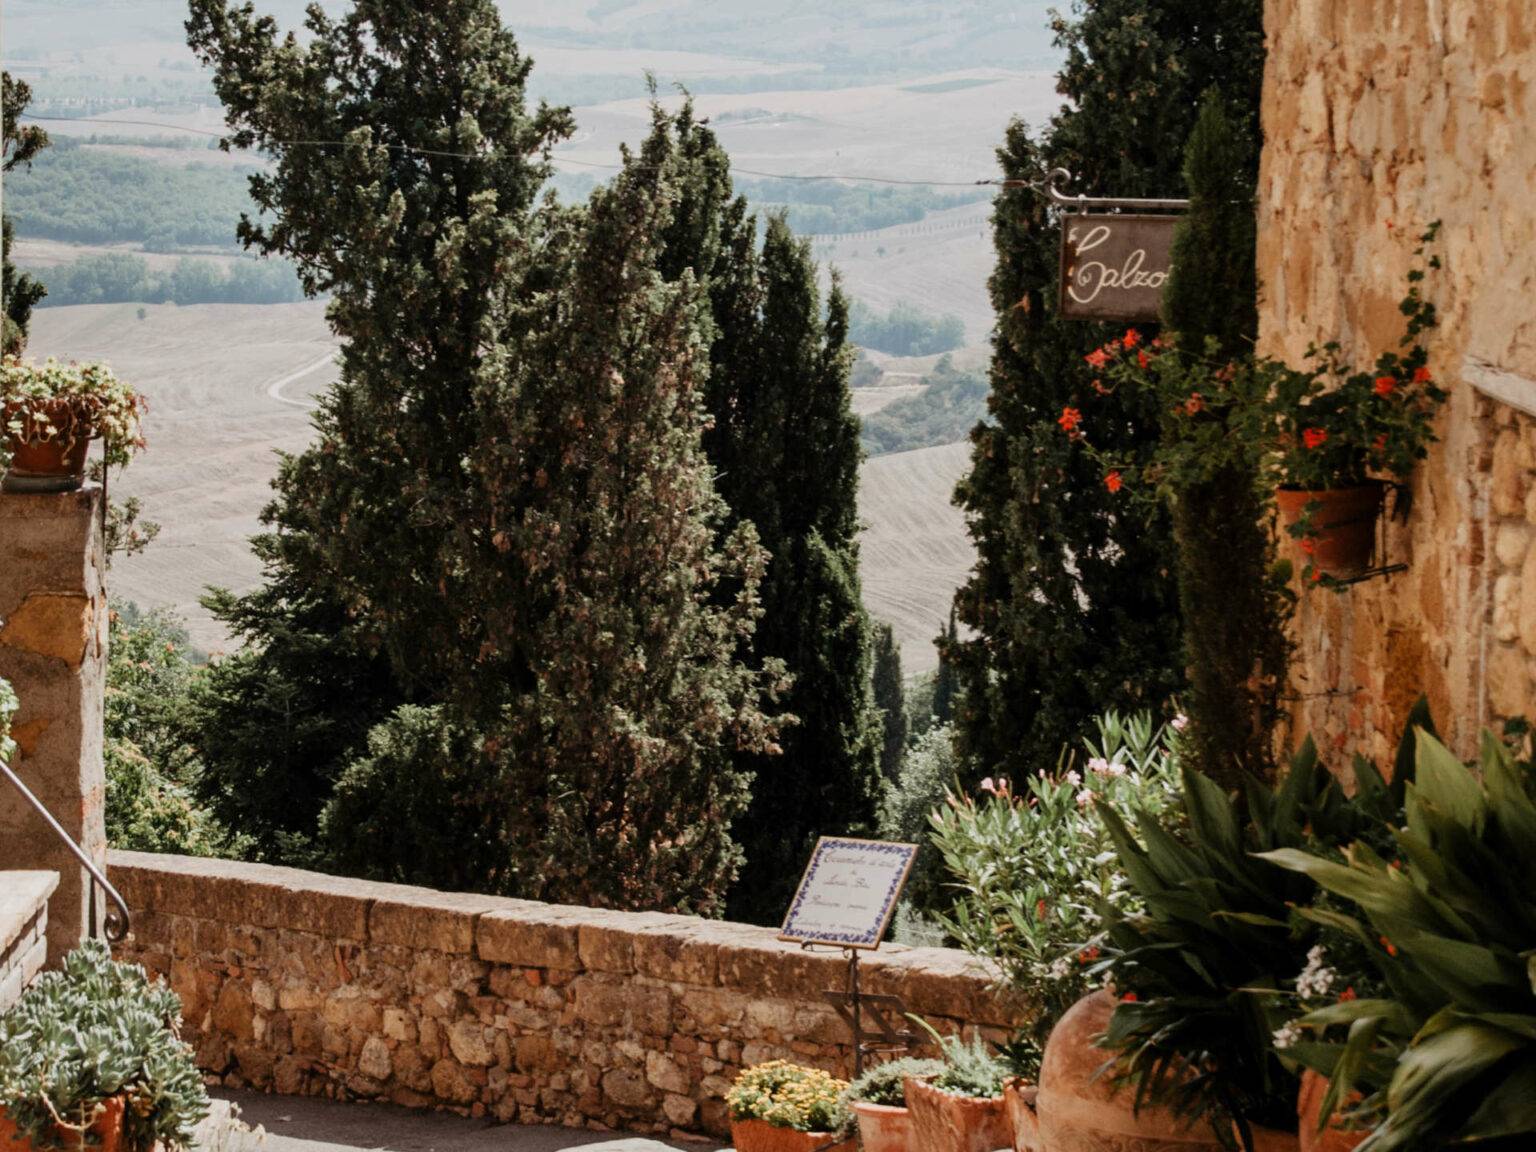 Eine Terrasse mit bepflanzten Blumenkübeln und Aussicht auf die Hügel der Toskana.